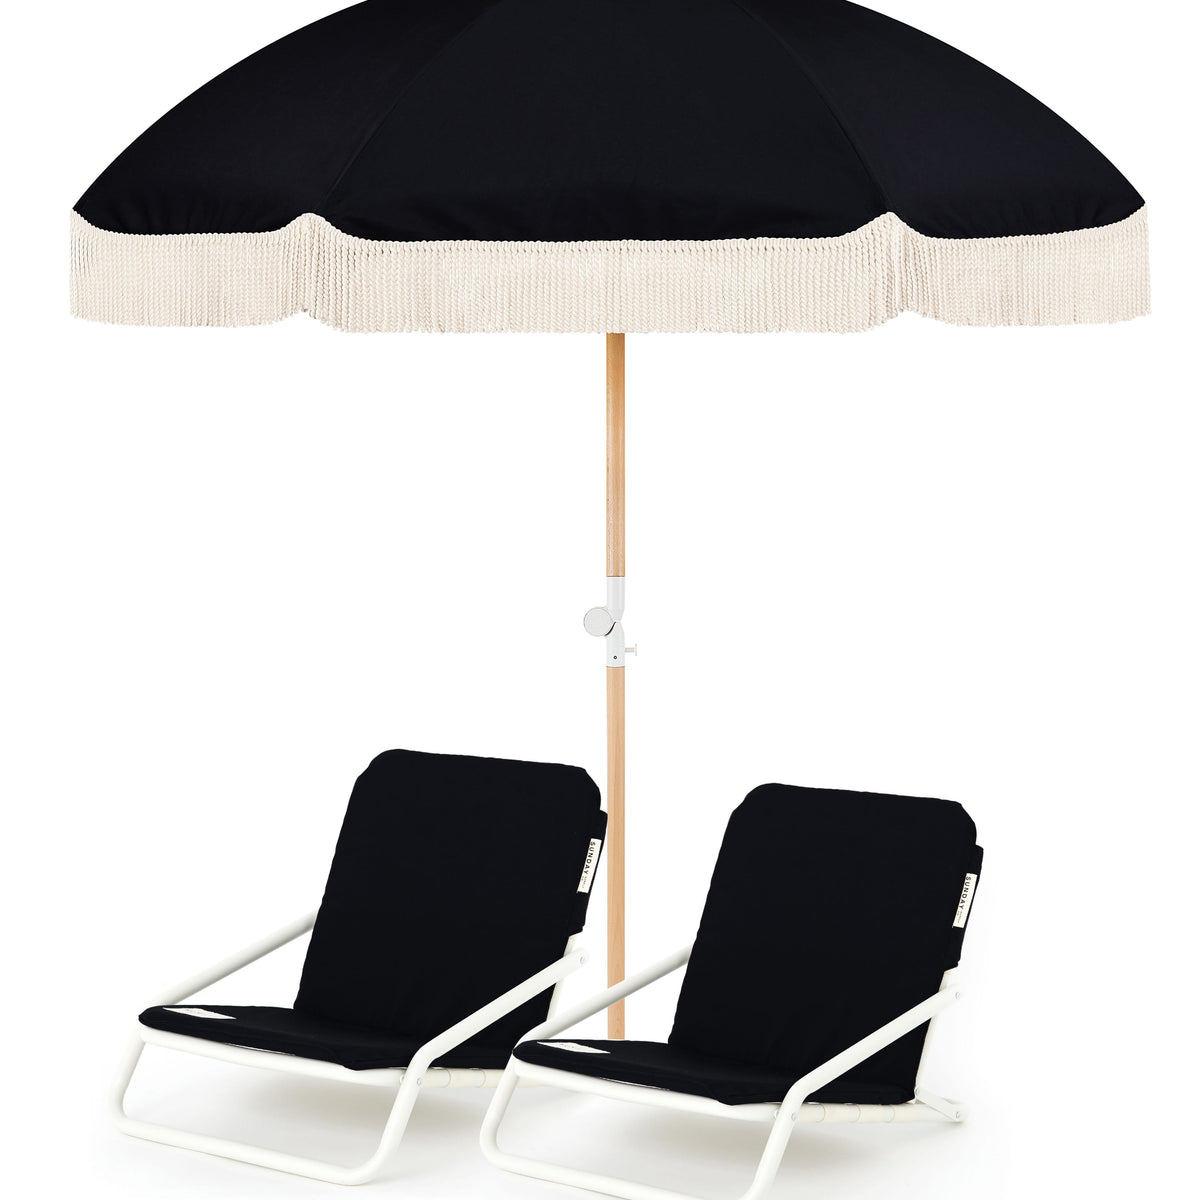 Black Rock Beach Umbrella & Beach Chair Set